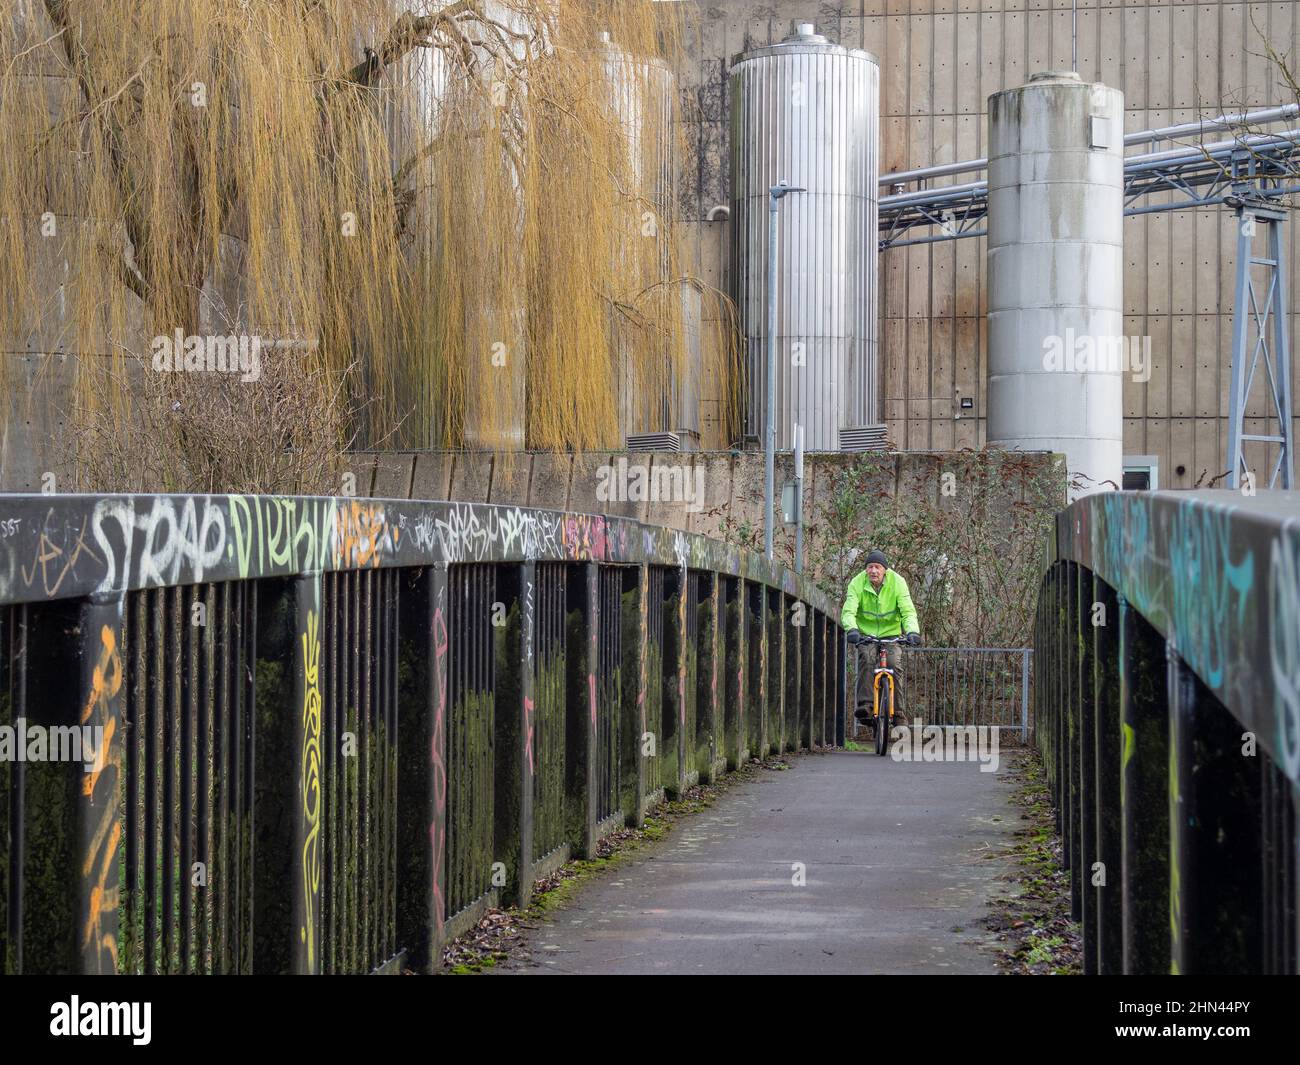 Ein Graffiti sprühte eine Fußgängerbrücke vor einem industriellen Hintergrund, Northampton, Großbritannien; ein Radfahrer überquerte die Brücke Stockfoto